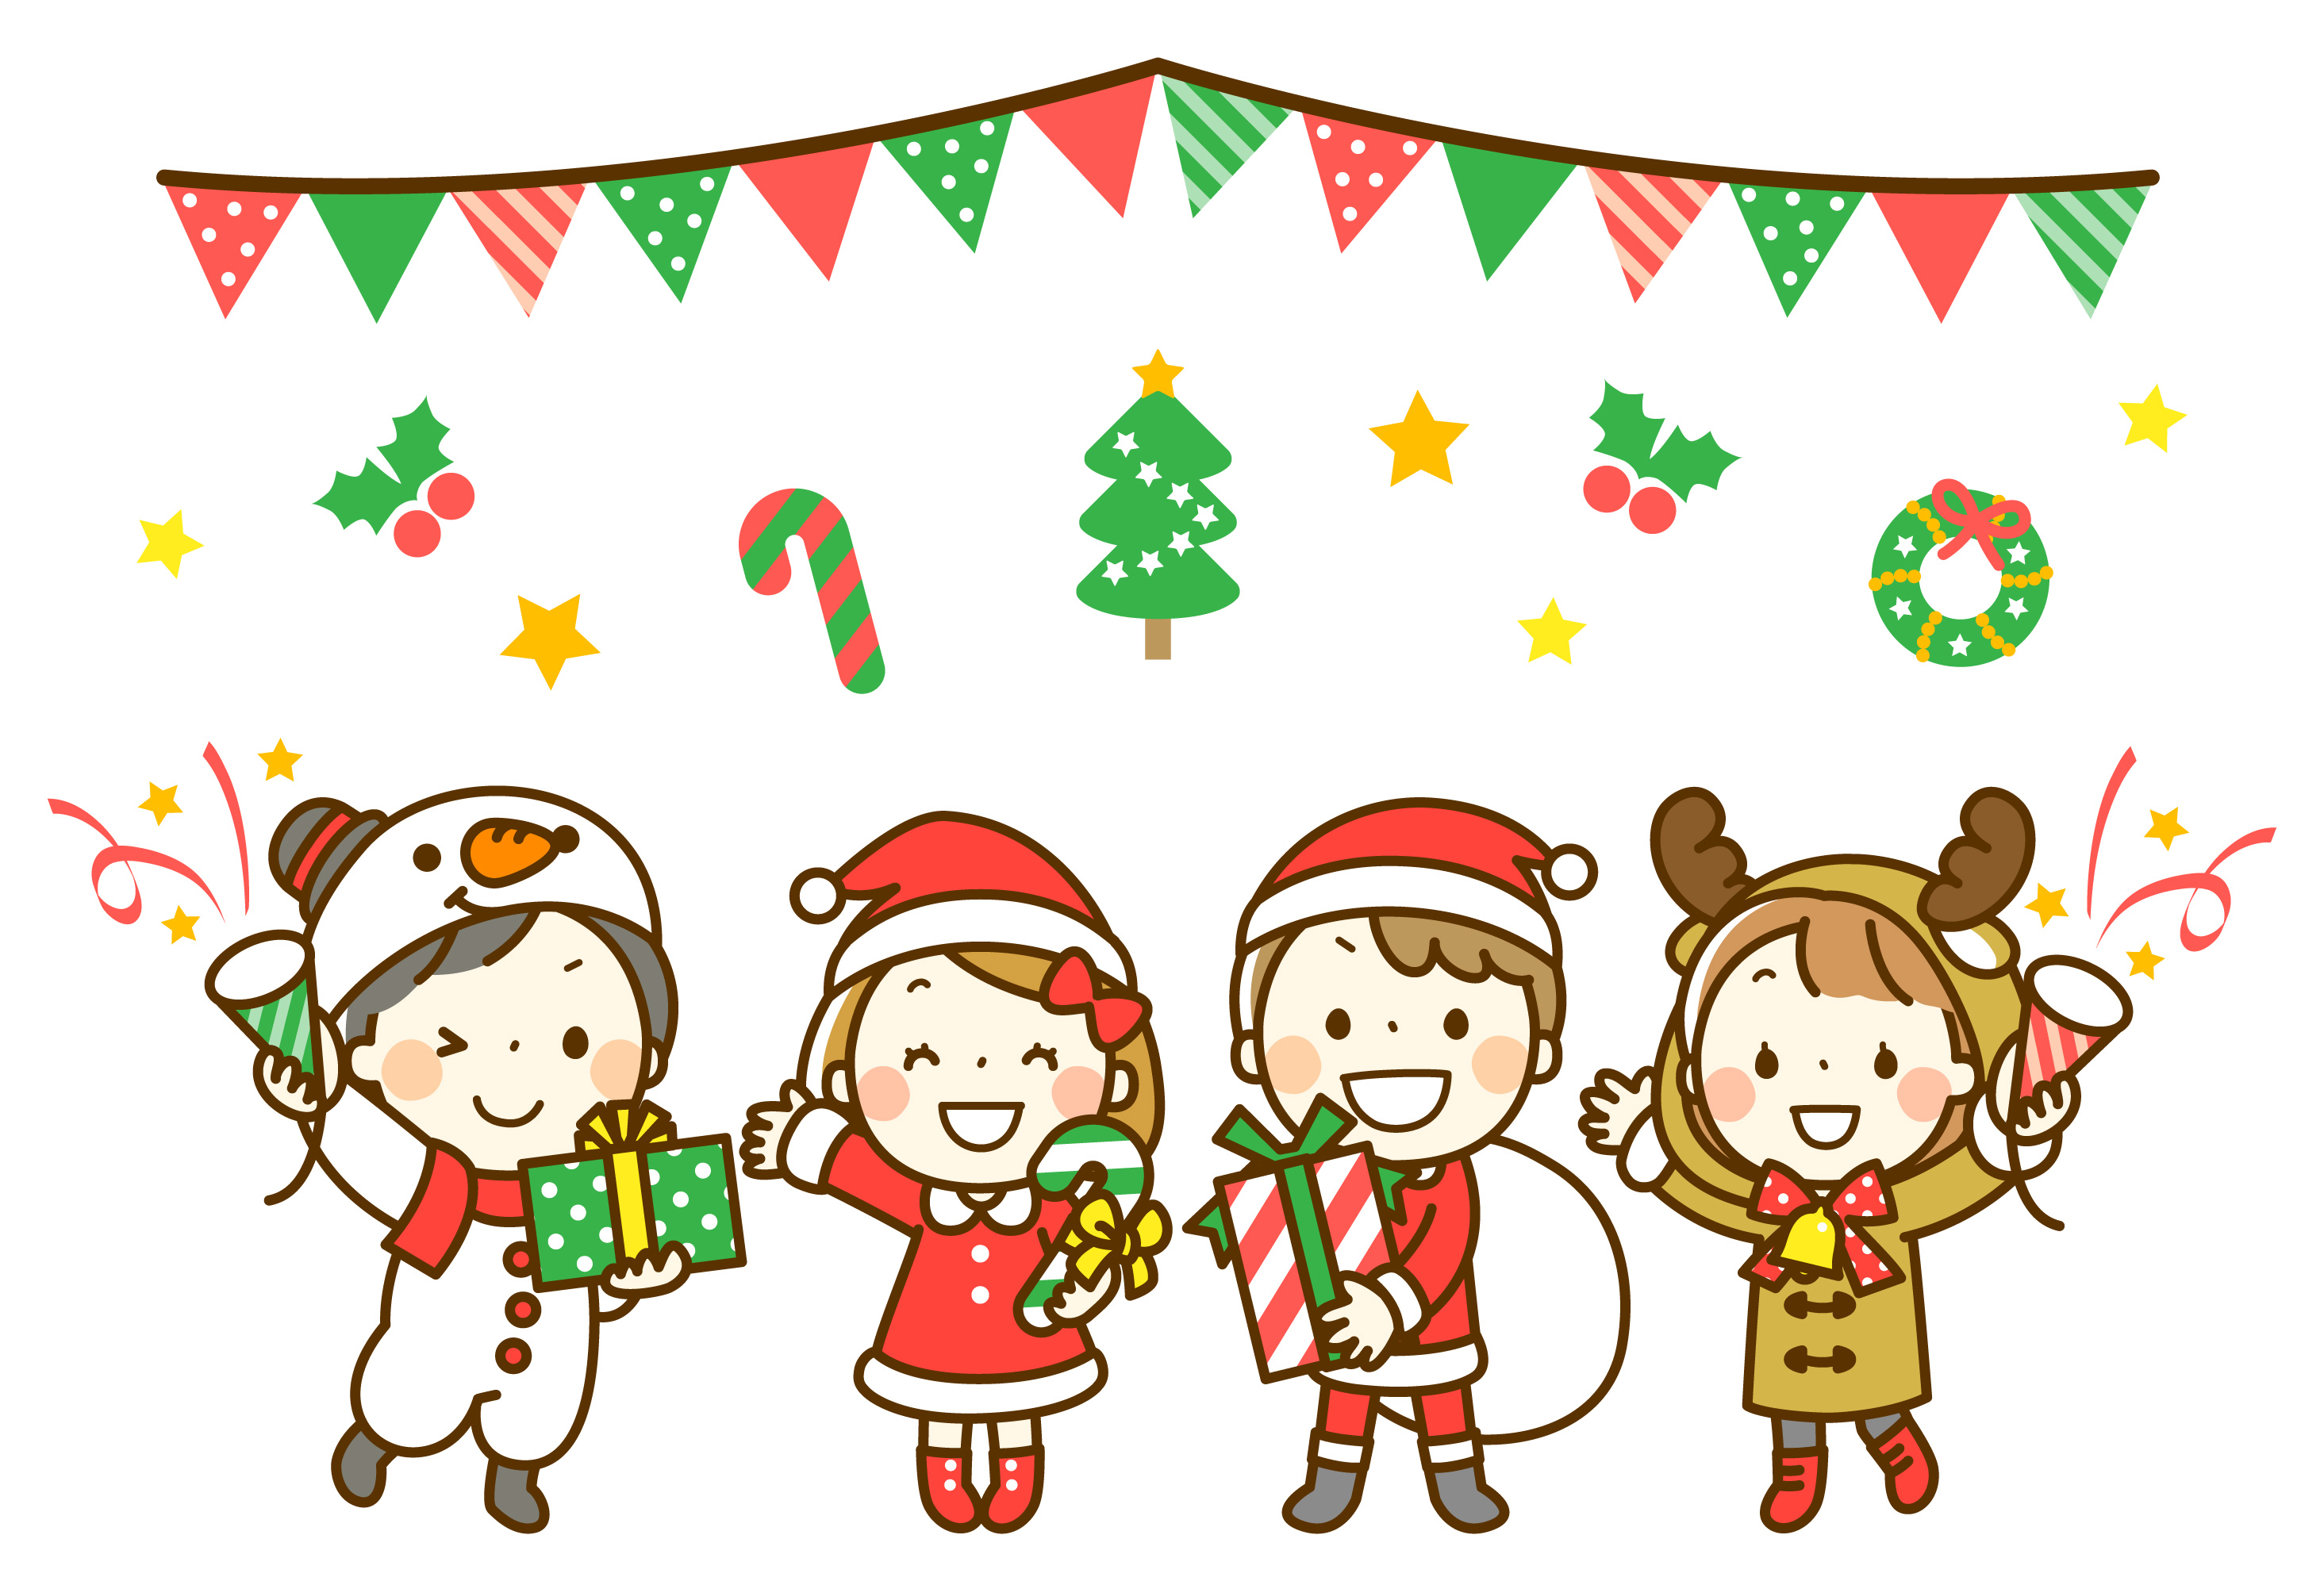 [12月14日] 湖南市　かんがる〜広場でクリスマス会☆  マジックショーやクリスマスのぼうしづくりもあるよ！